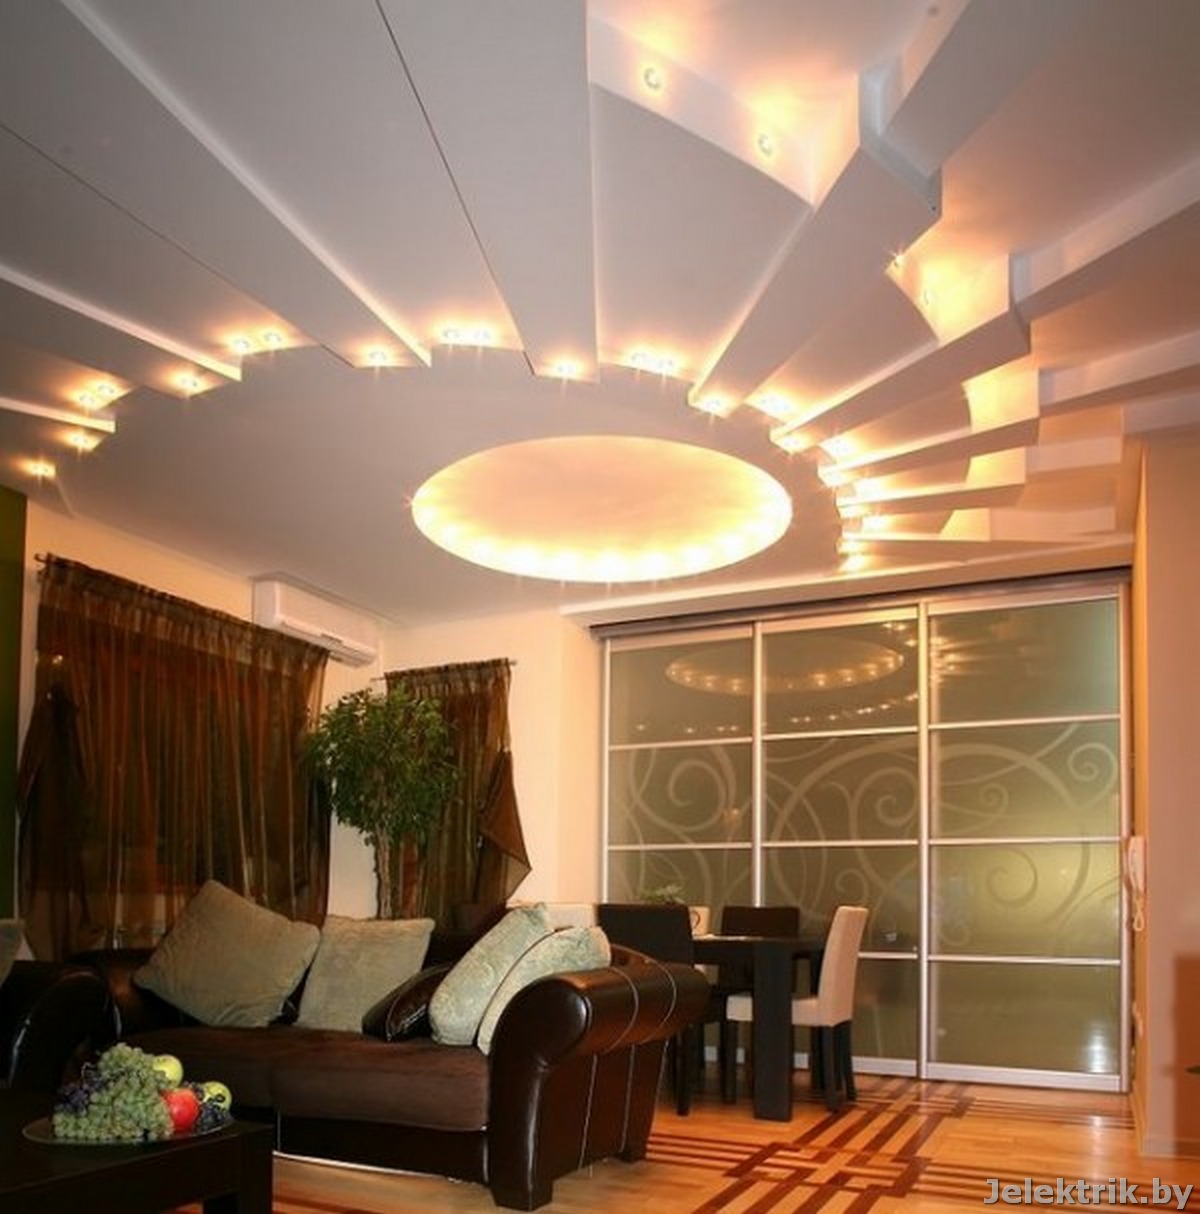  Двухуровневый потолок из гипсокартона с подсветкой